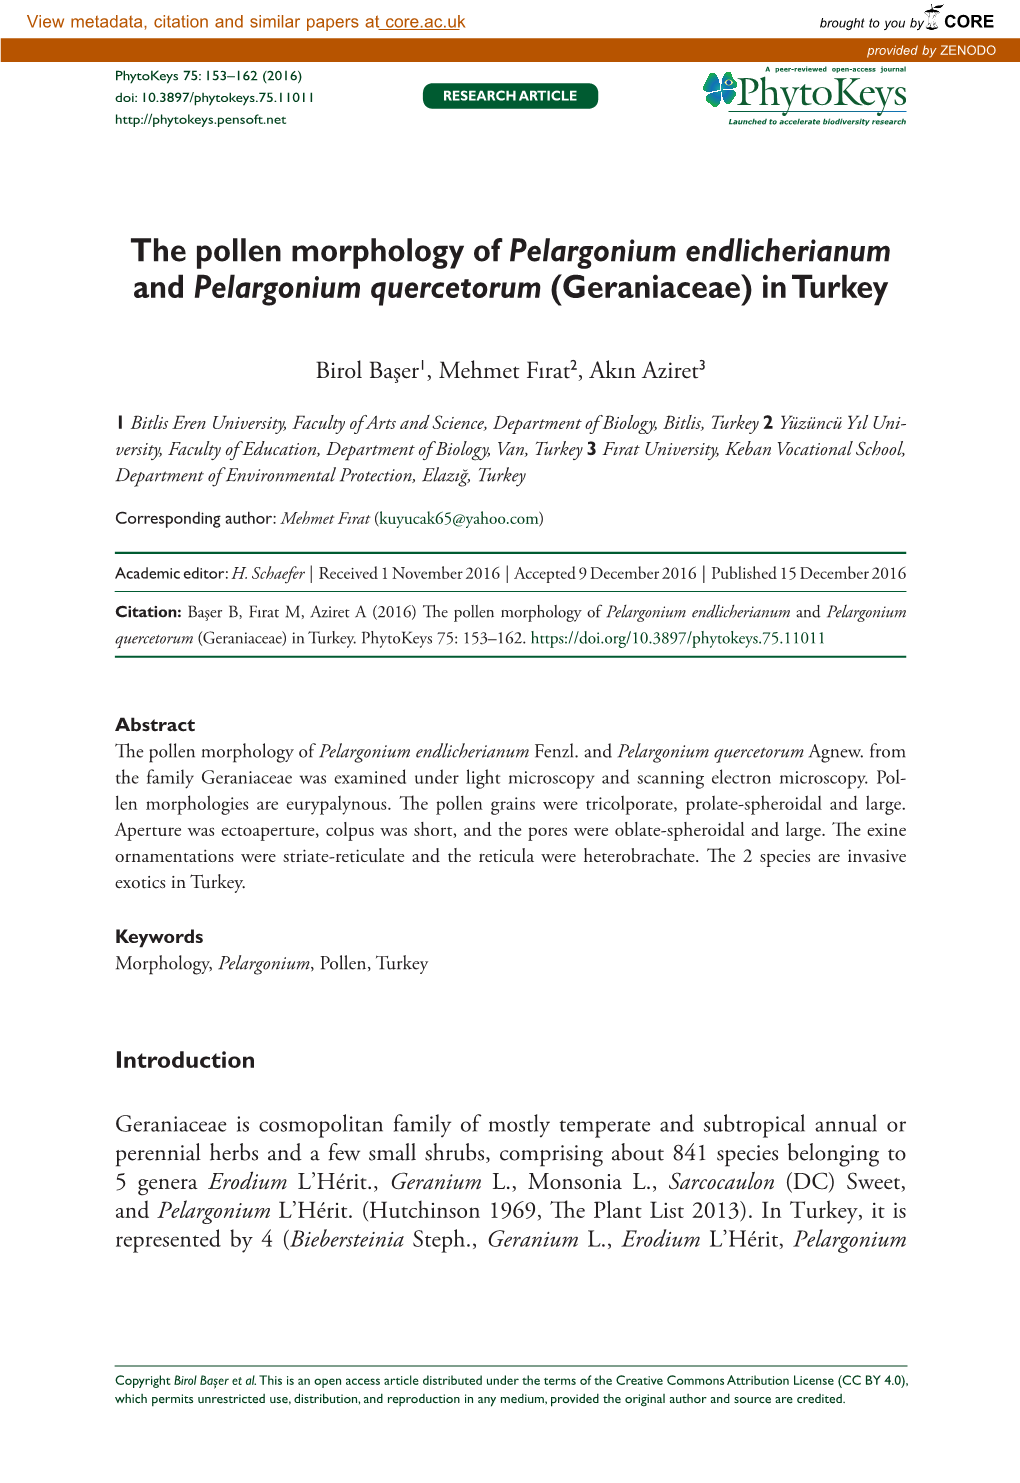 The Pollen Morphology of Pelargonium Endlicherianum and Pelargonium Quercetorum (Geraniaceae) in Turkey